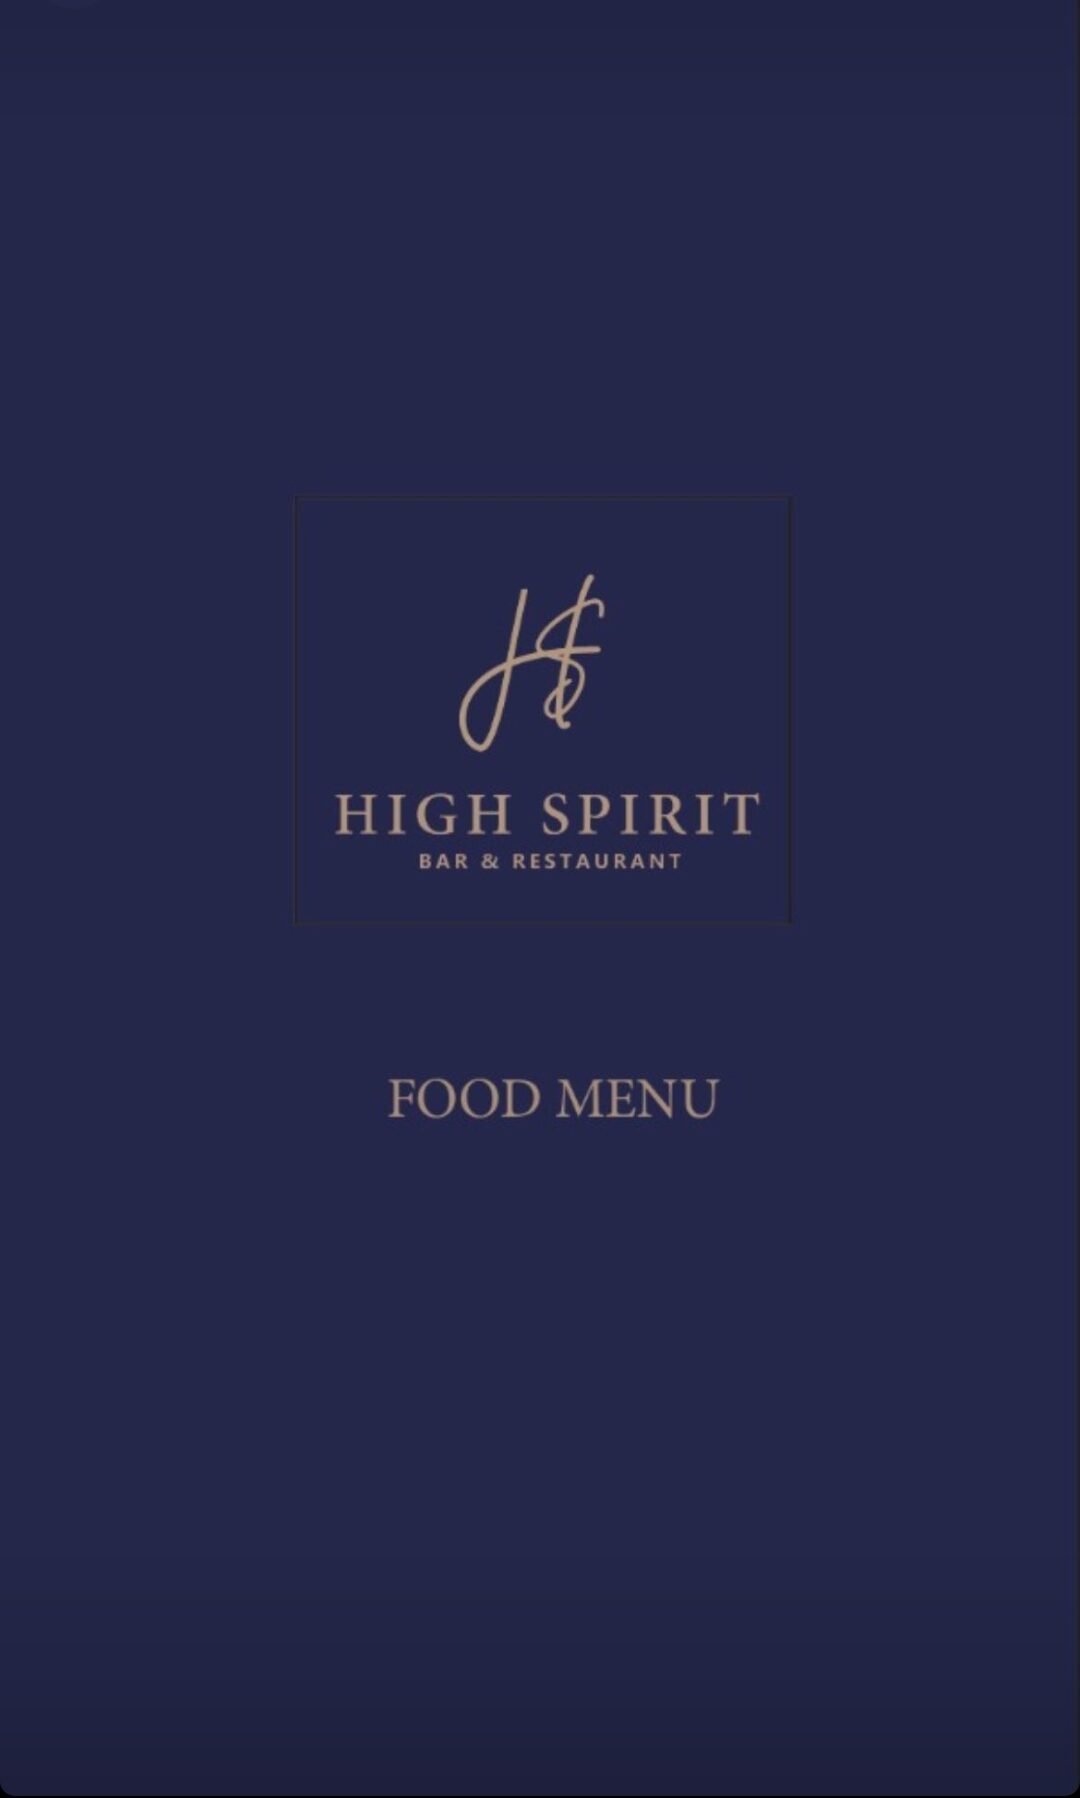 High Spirit Lounge Food Menu